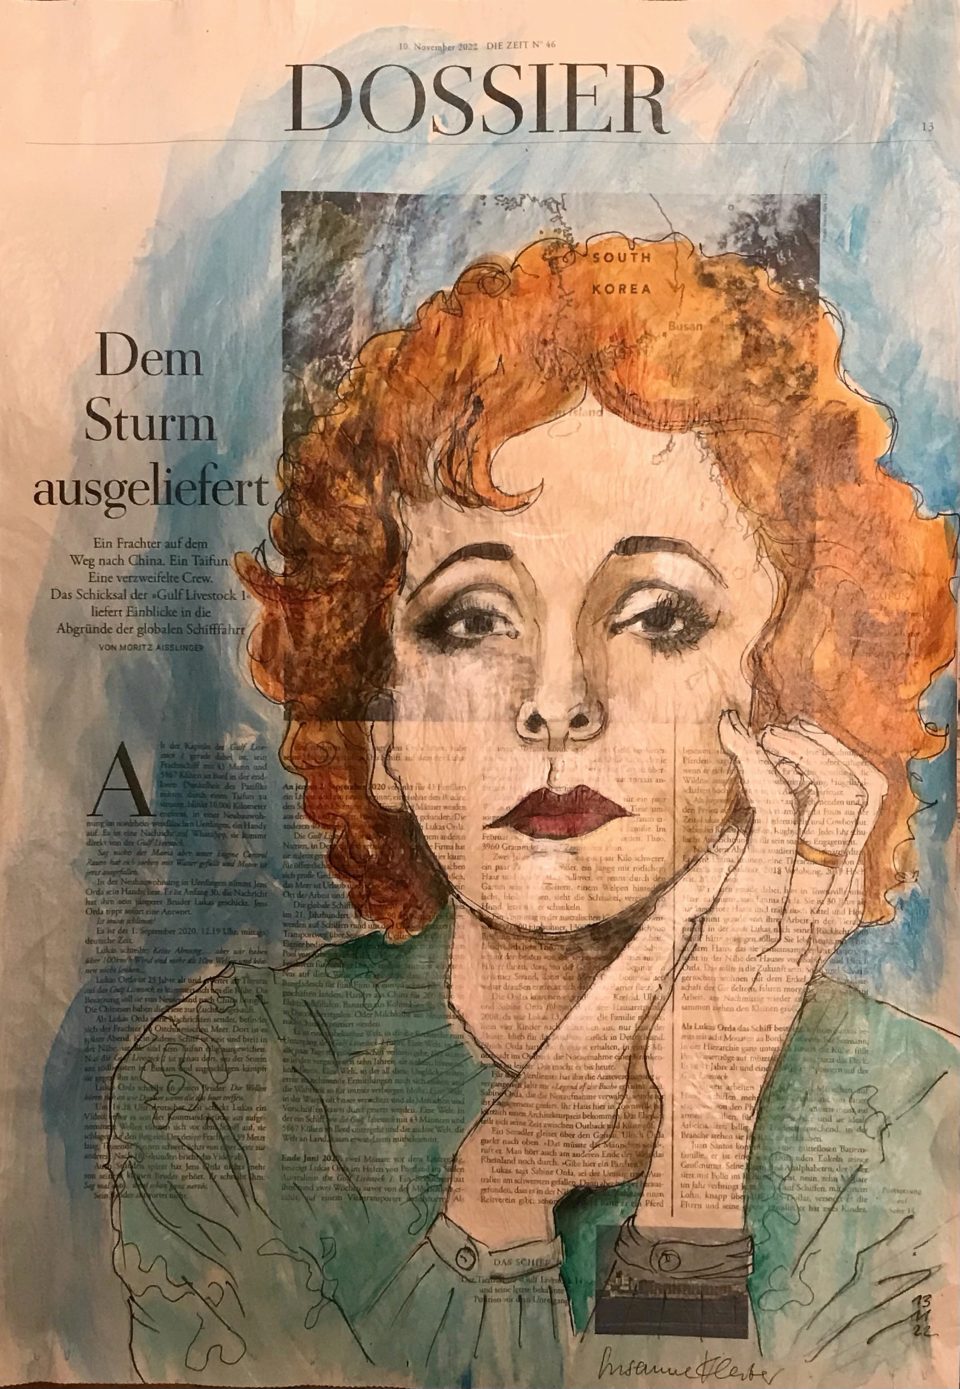 Dem Sturm ausgeliefert (Zarah L.), Porträt von Zarah Leander auf ganzer Zeitungsseite, 56 x 40 cm